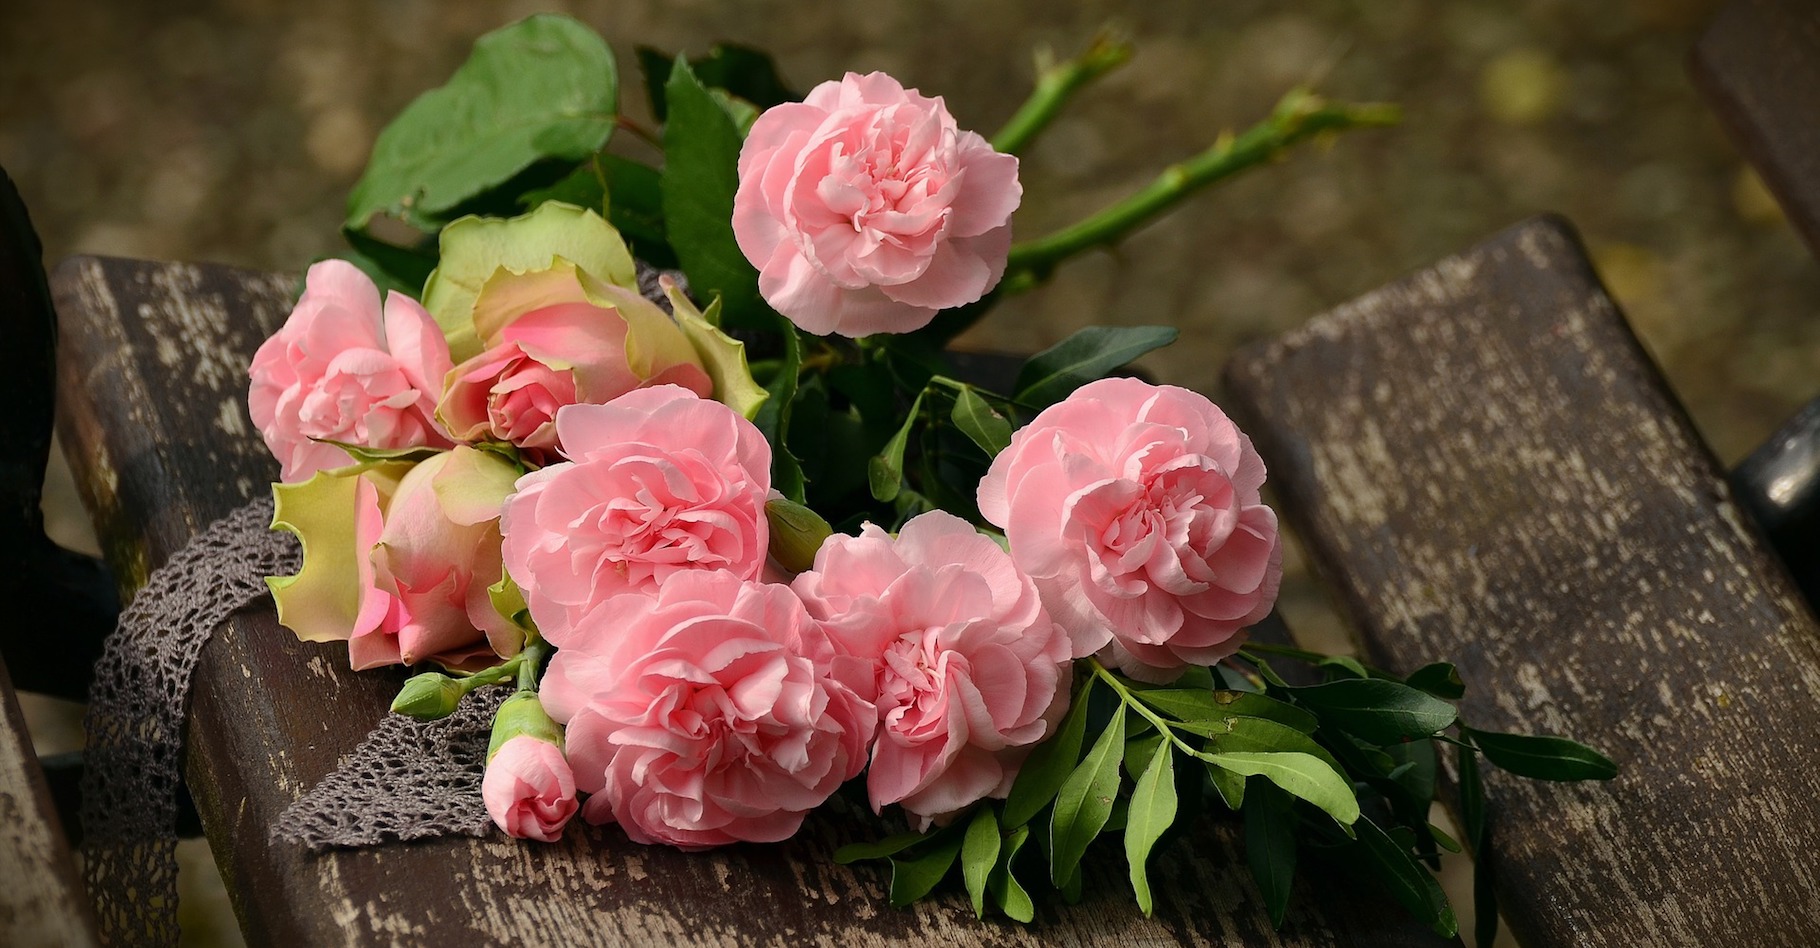 La plupart des femmes sont séduites par un homme qui leur offre des fleurs. La faute au principe du handicap ? © congerdesign, Pixabay, CC0 Creative Commons